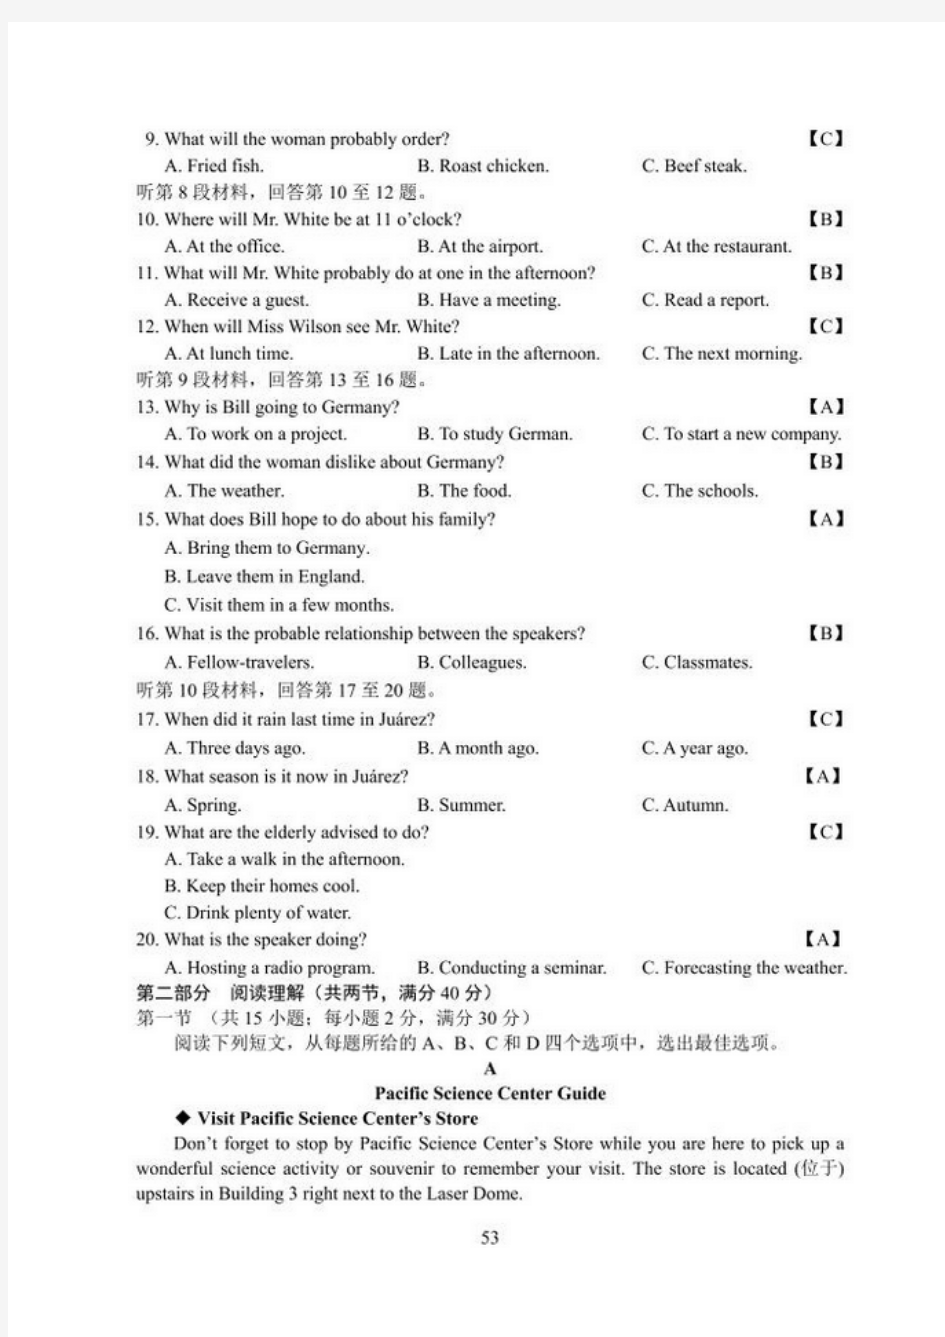 安徽省2017年高考英语试卷(含答案)